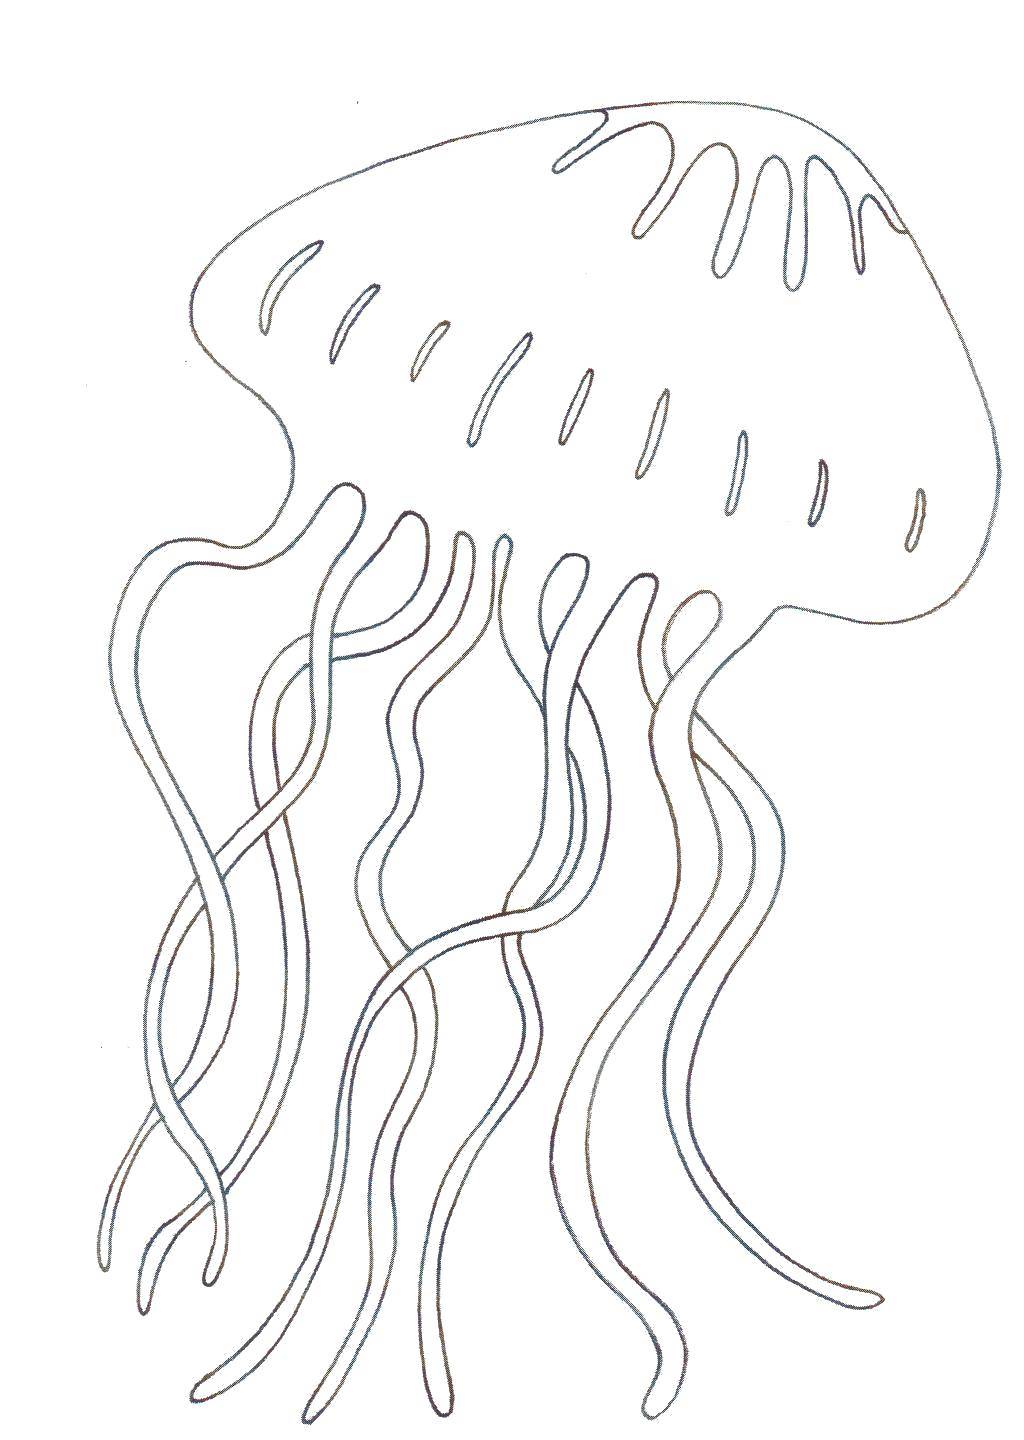   Медуза в океане